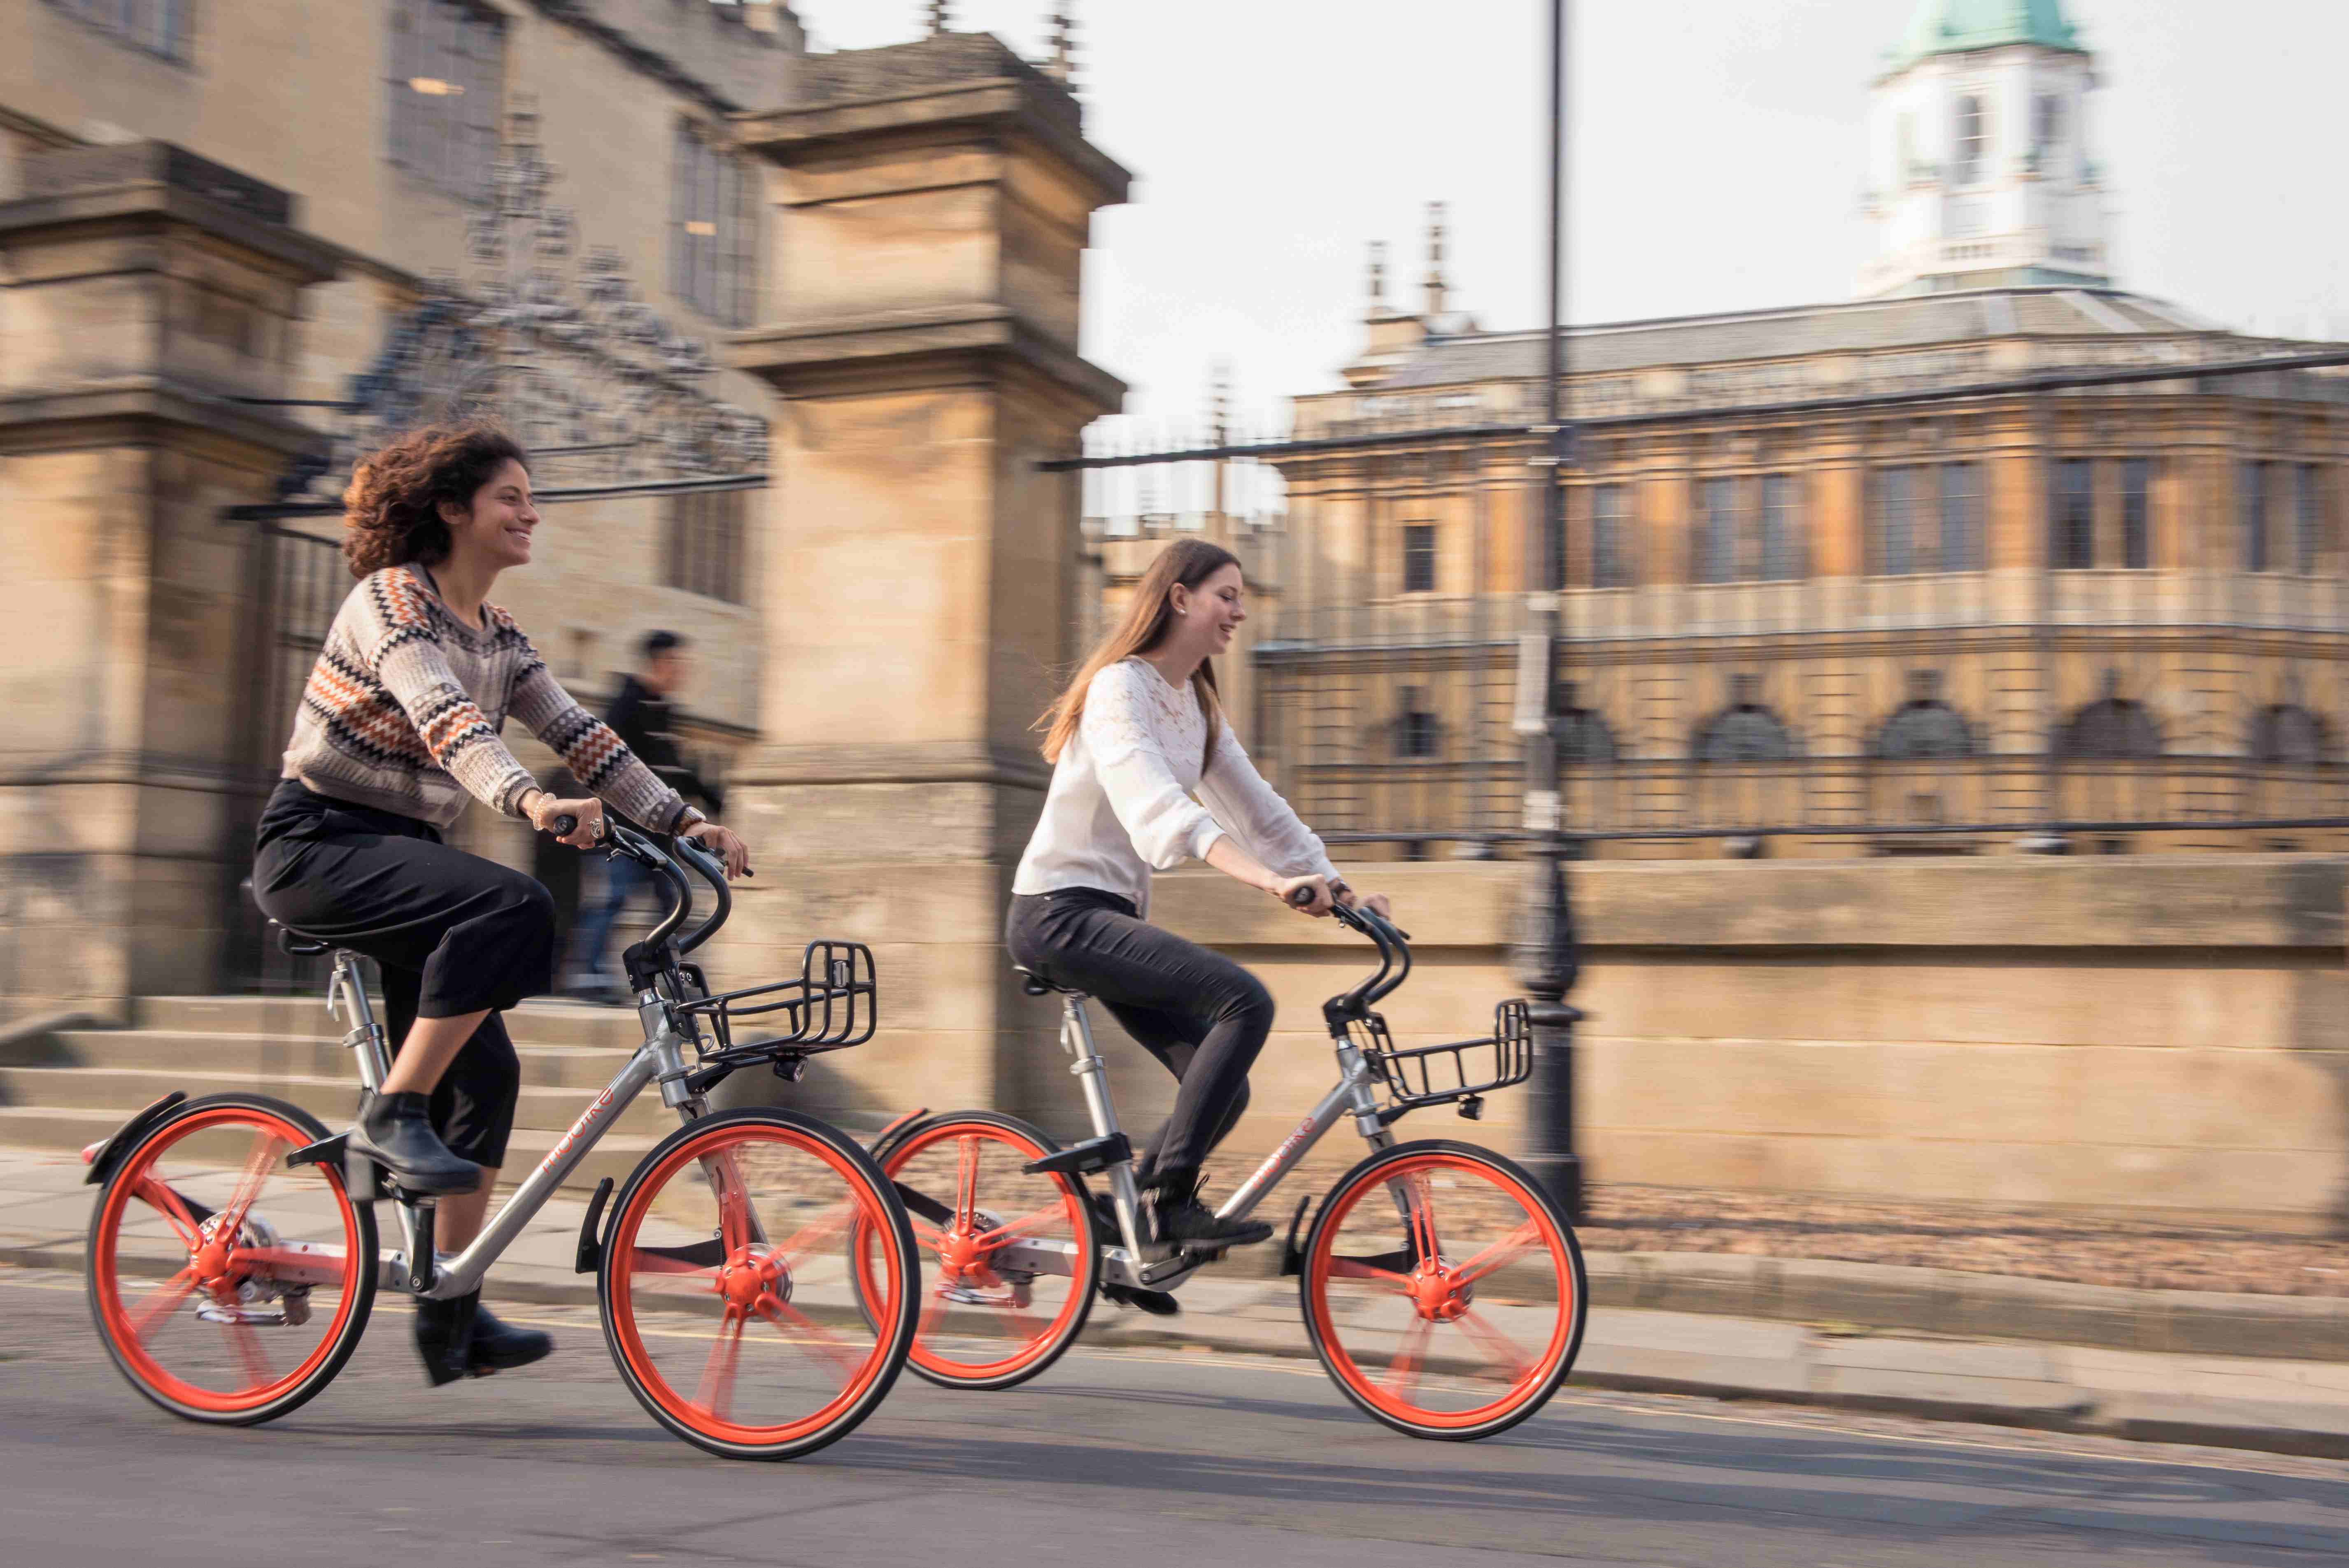 摩拜单车入驻英国第5城牛津 携手当地企业推广“中国智造”_搜狐科技_搜狐网